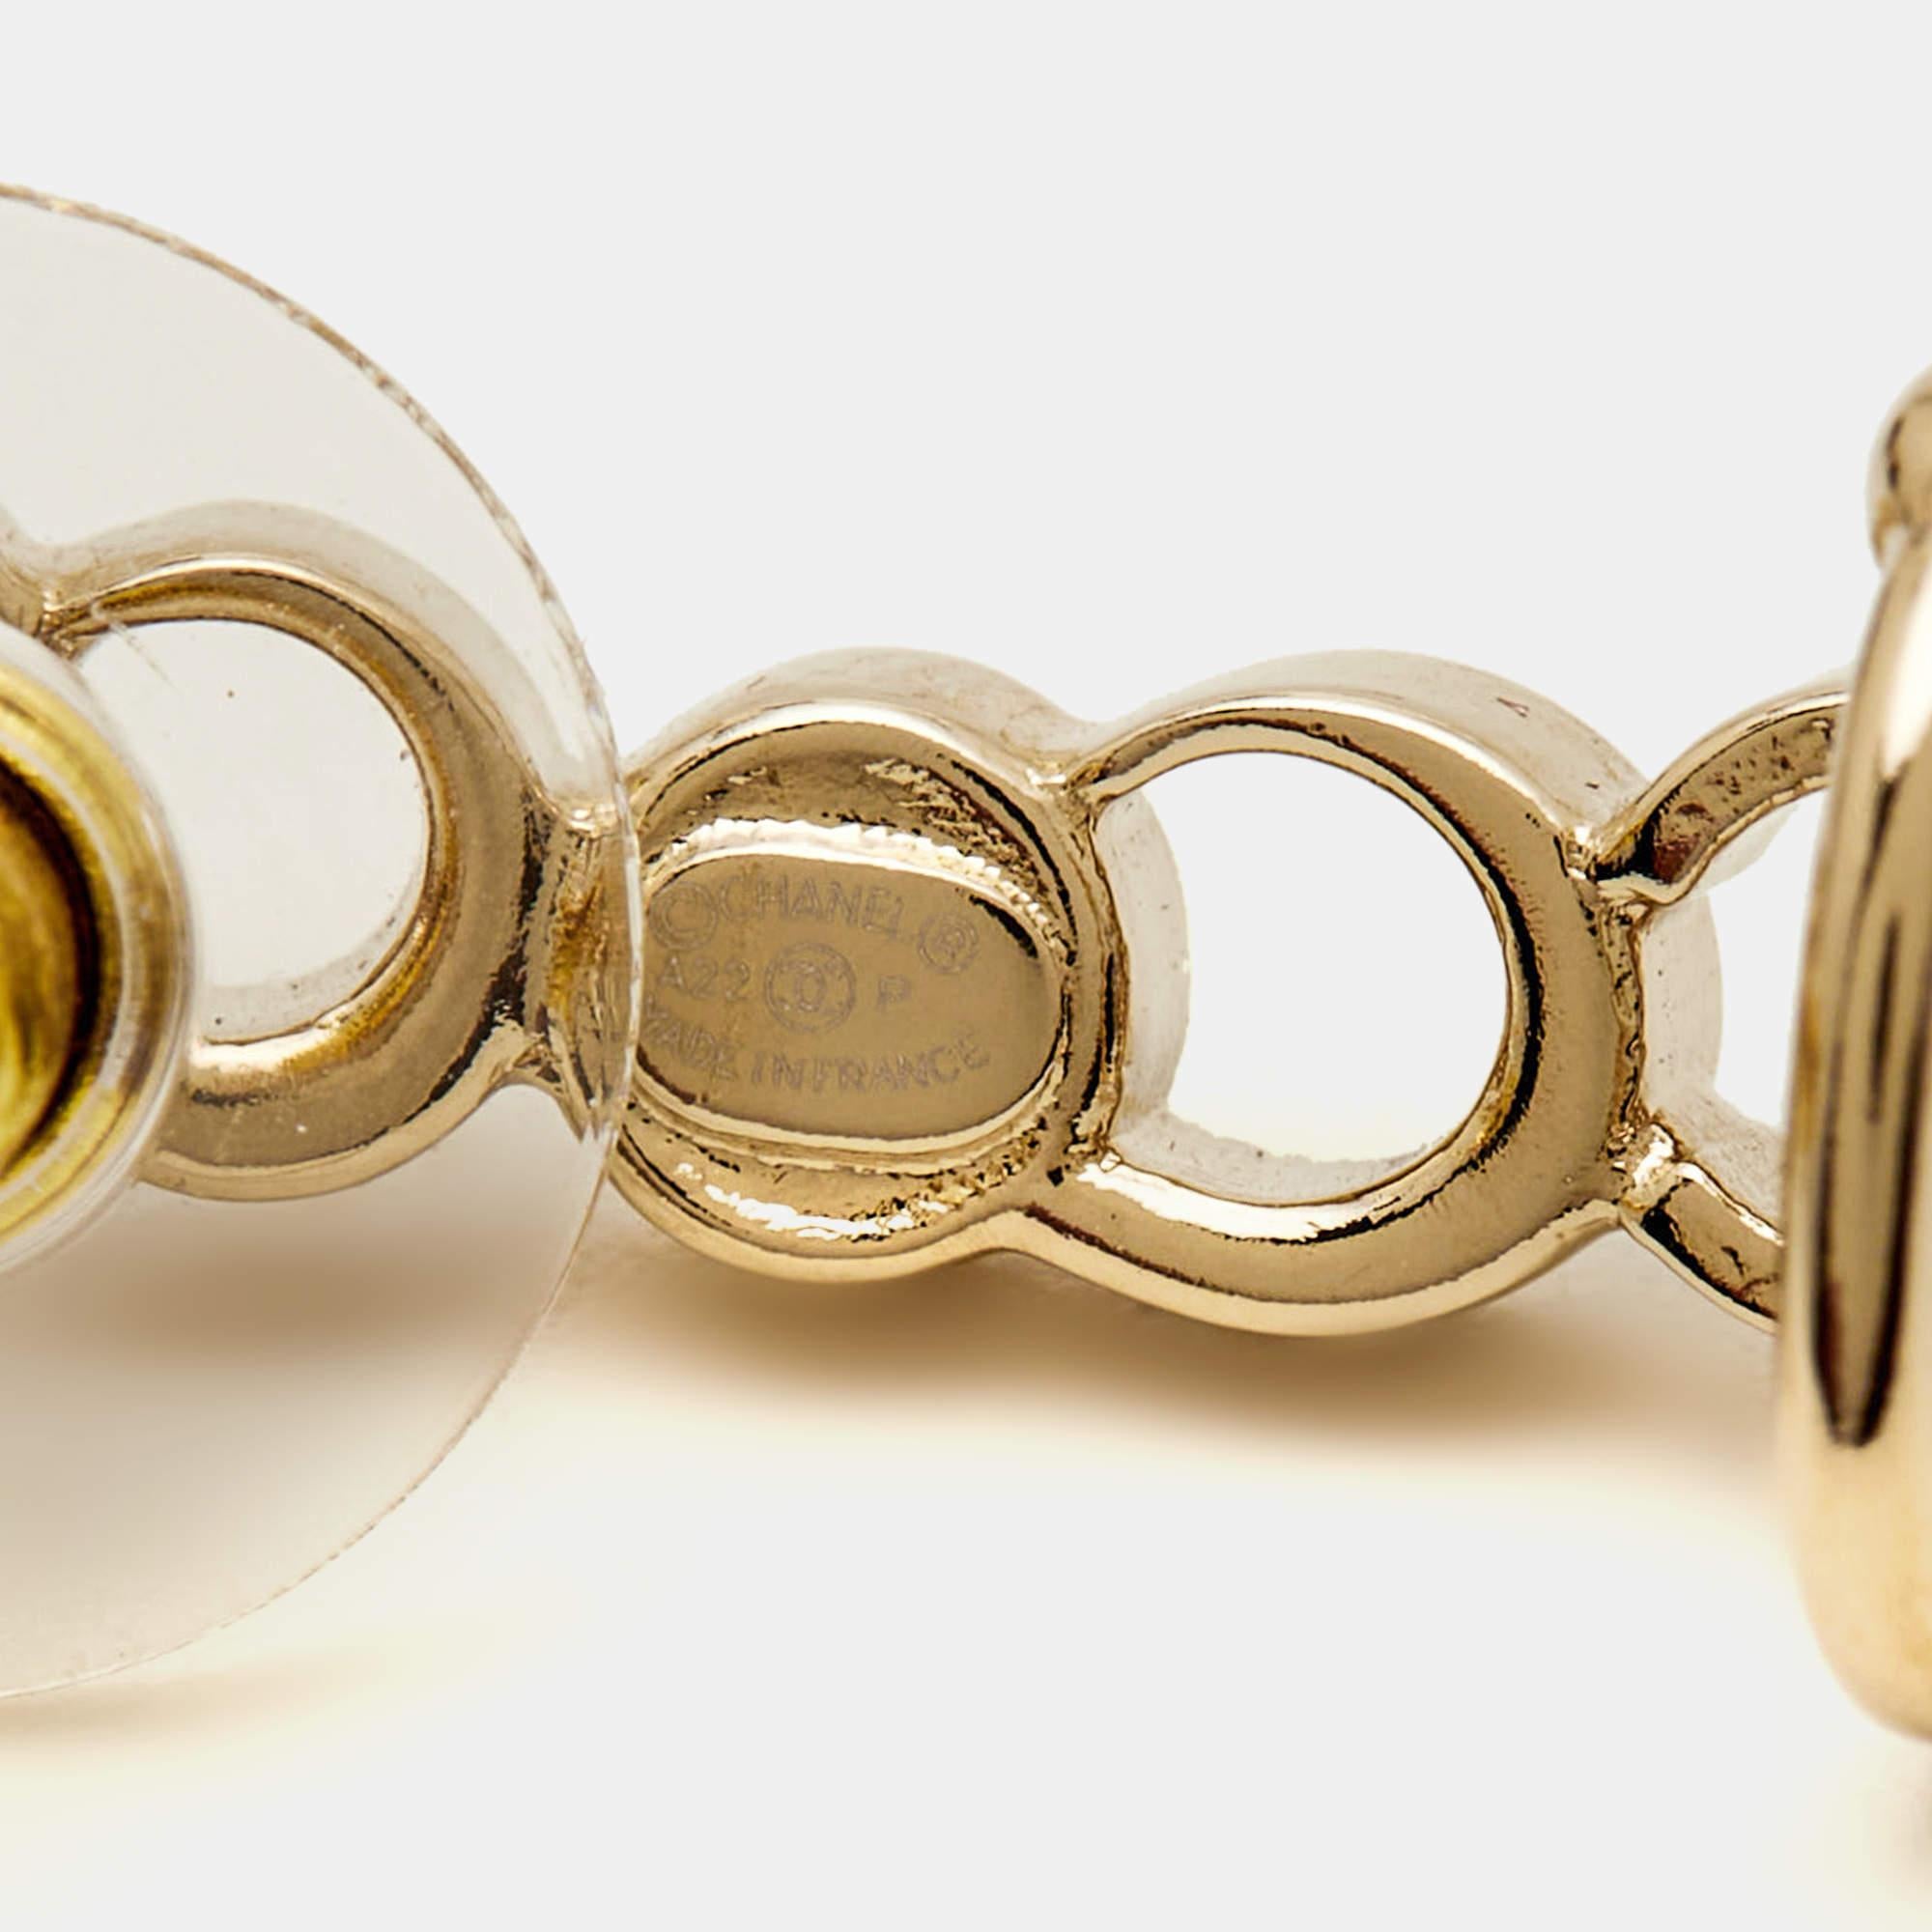 Les boucles d'oreilles Chanel sont d'une grande élégance et d'un design unique. Réalisées en métal doré, ces boucles d'oreilles arborent le motif emblématique de Chanel, orné de cristaux étincelants. Le style grimpant ajoute une touche de modernité,